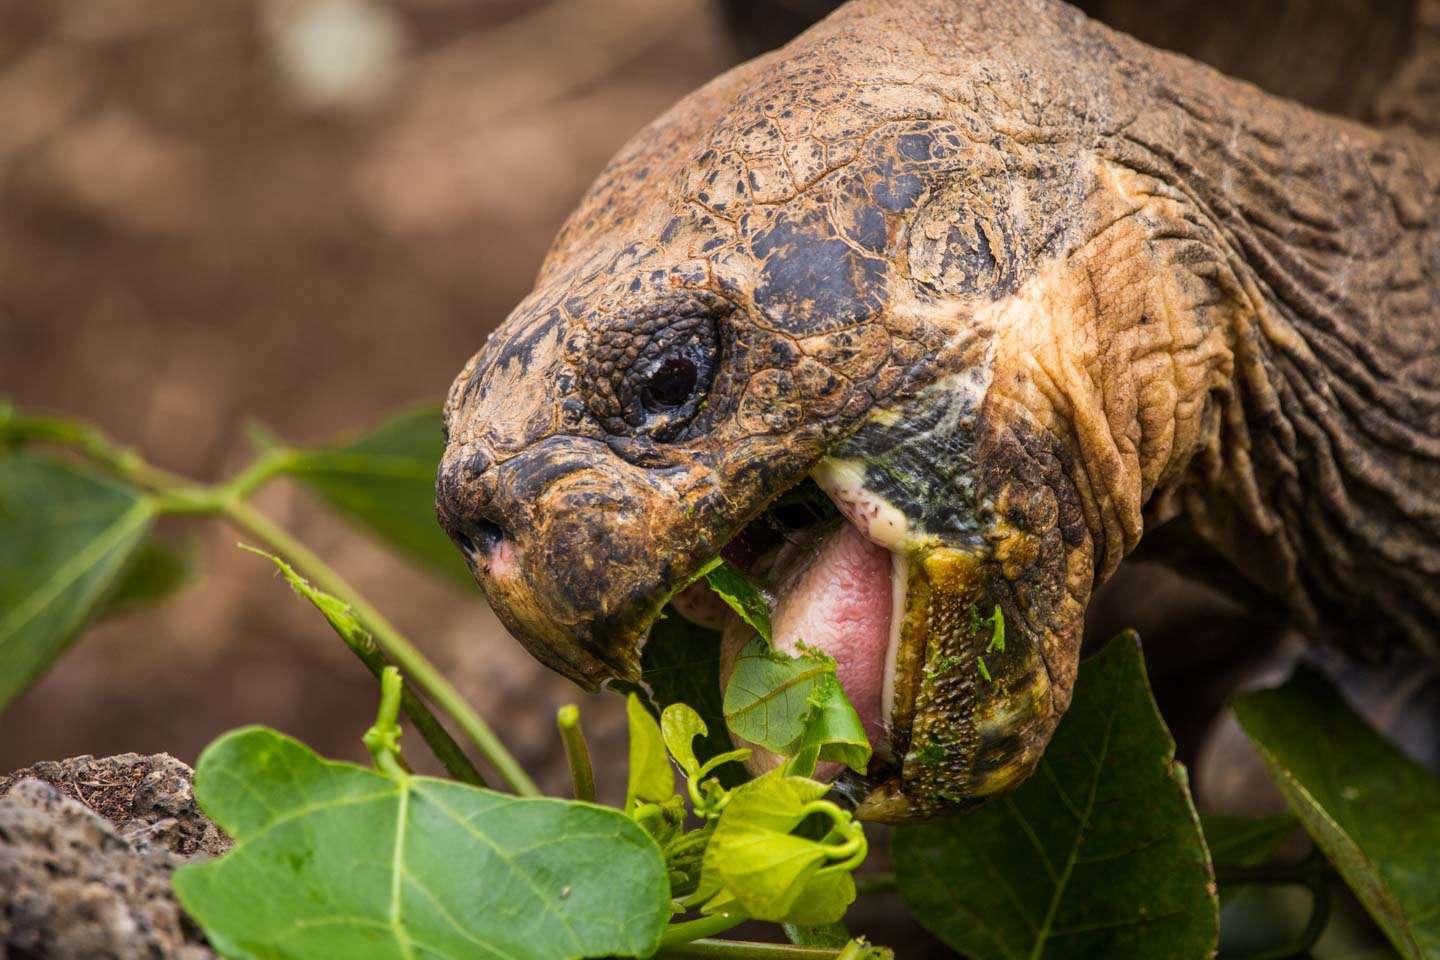 Close up of giant tortoise feeding, Fausto Llerena Breeding Center, Santa Cruz Island, Galápagos Islands, Ecuador